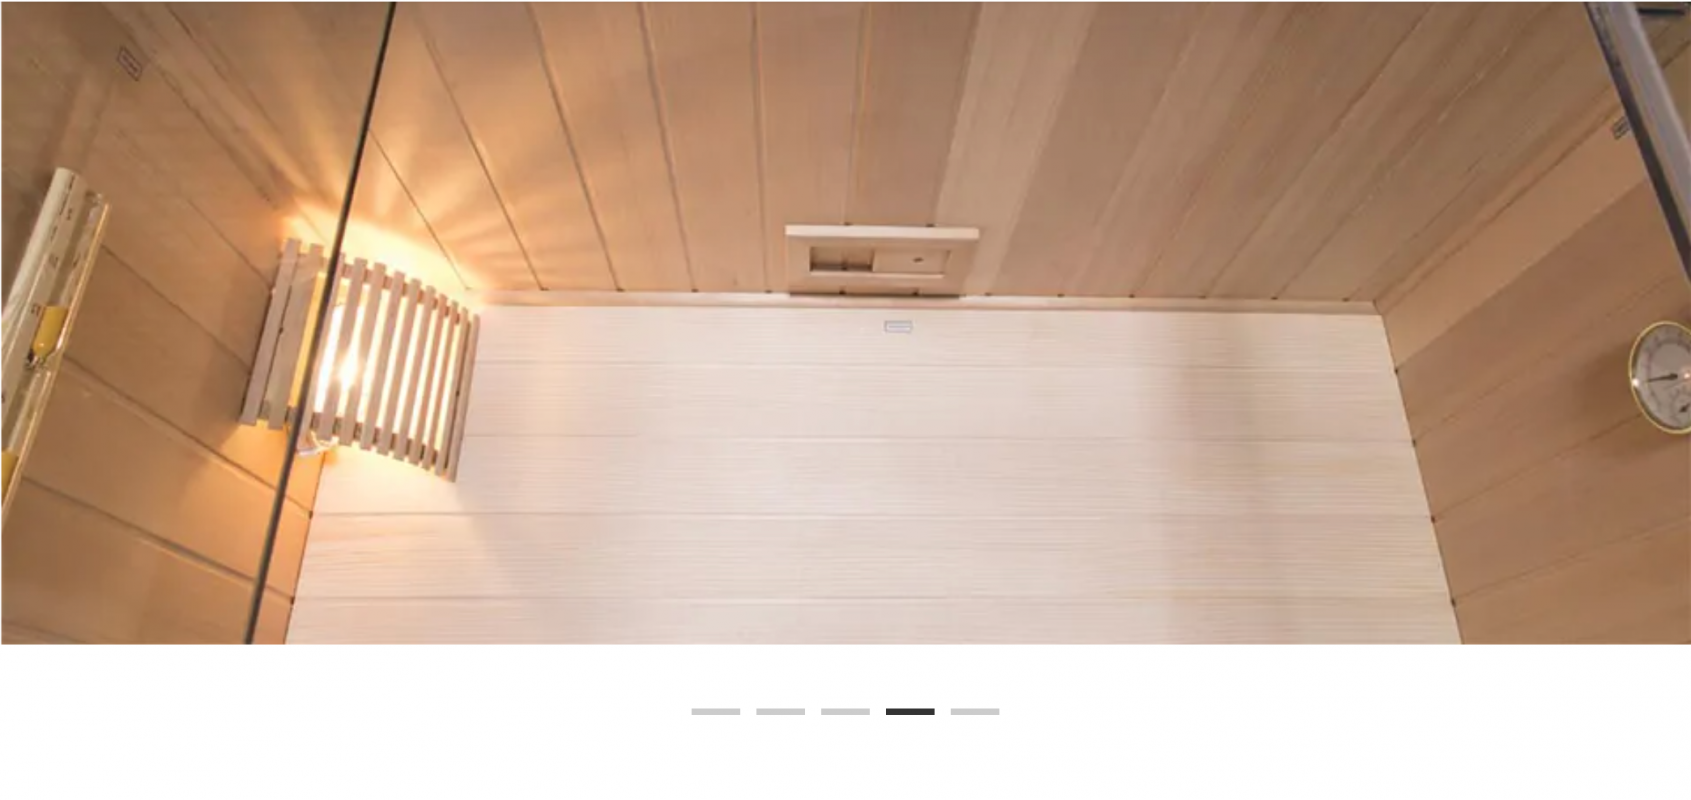 Sauna finlandesa interior de madera-Ignacio / WELLIS